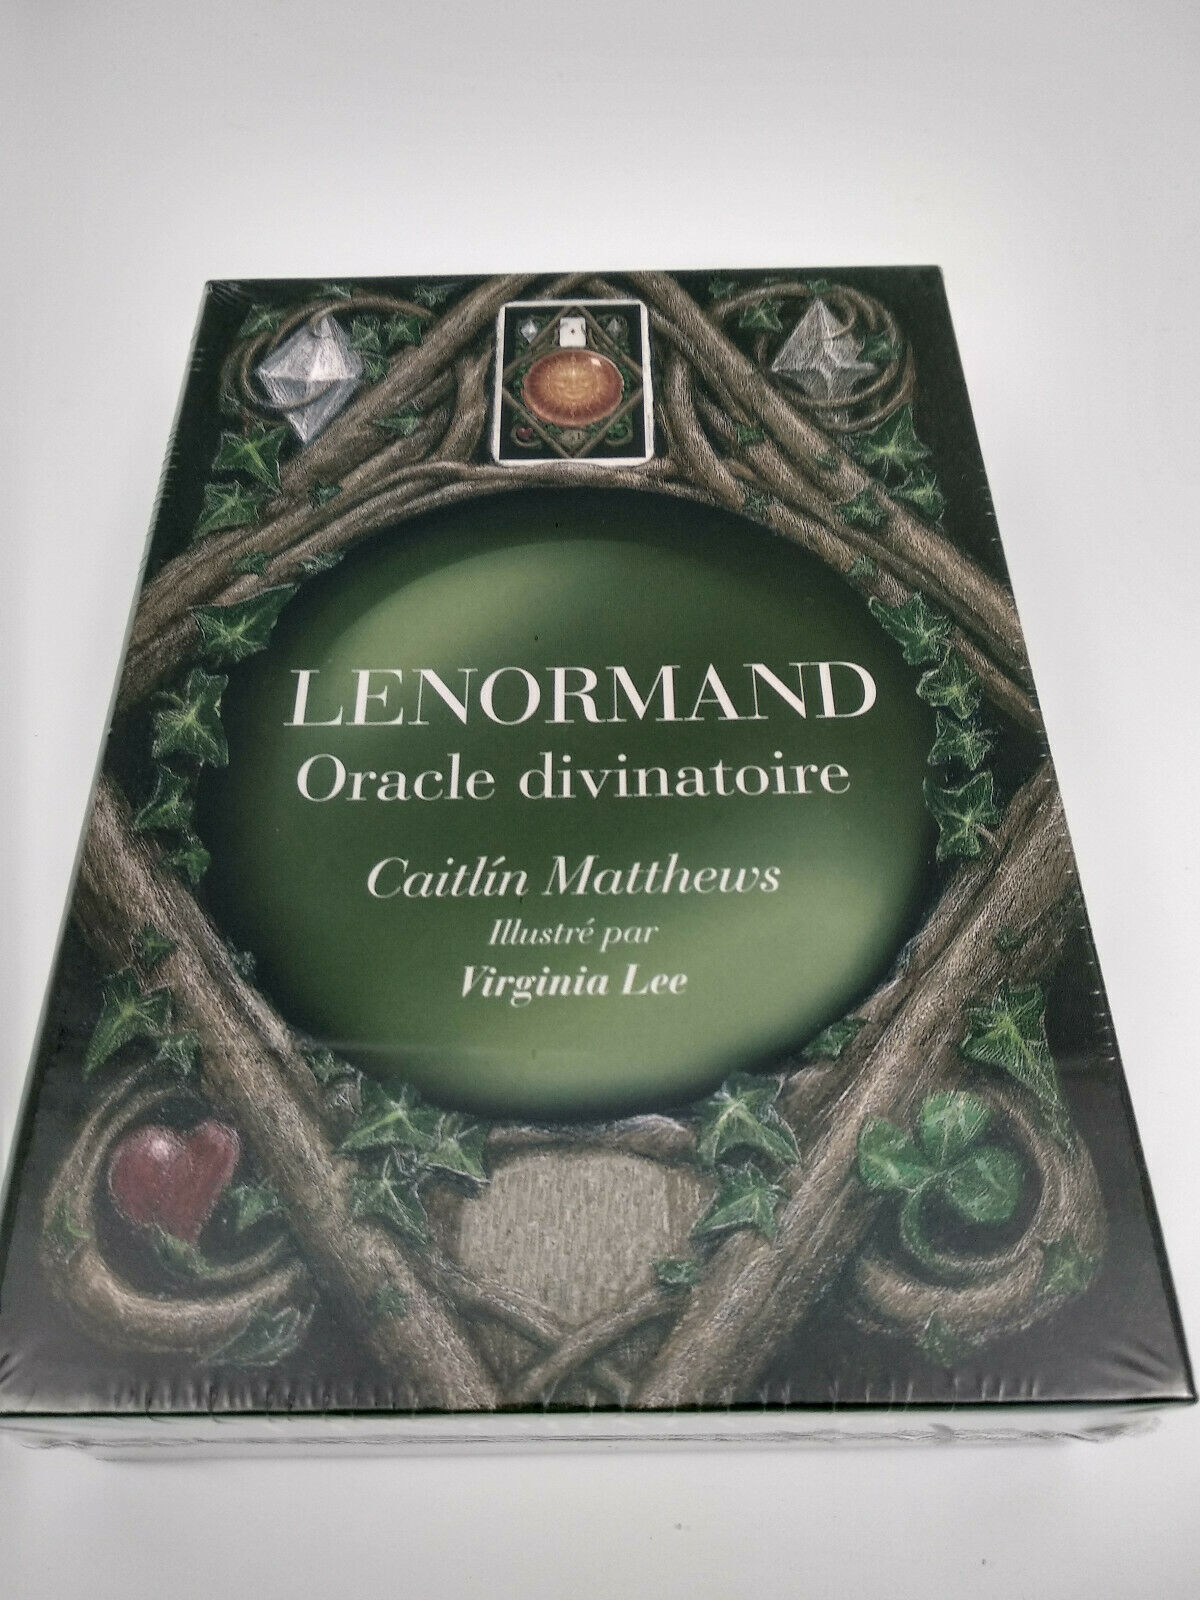 Oracle Lenormand 2020 jeu de cartes divinatoires en Français +